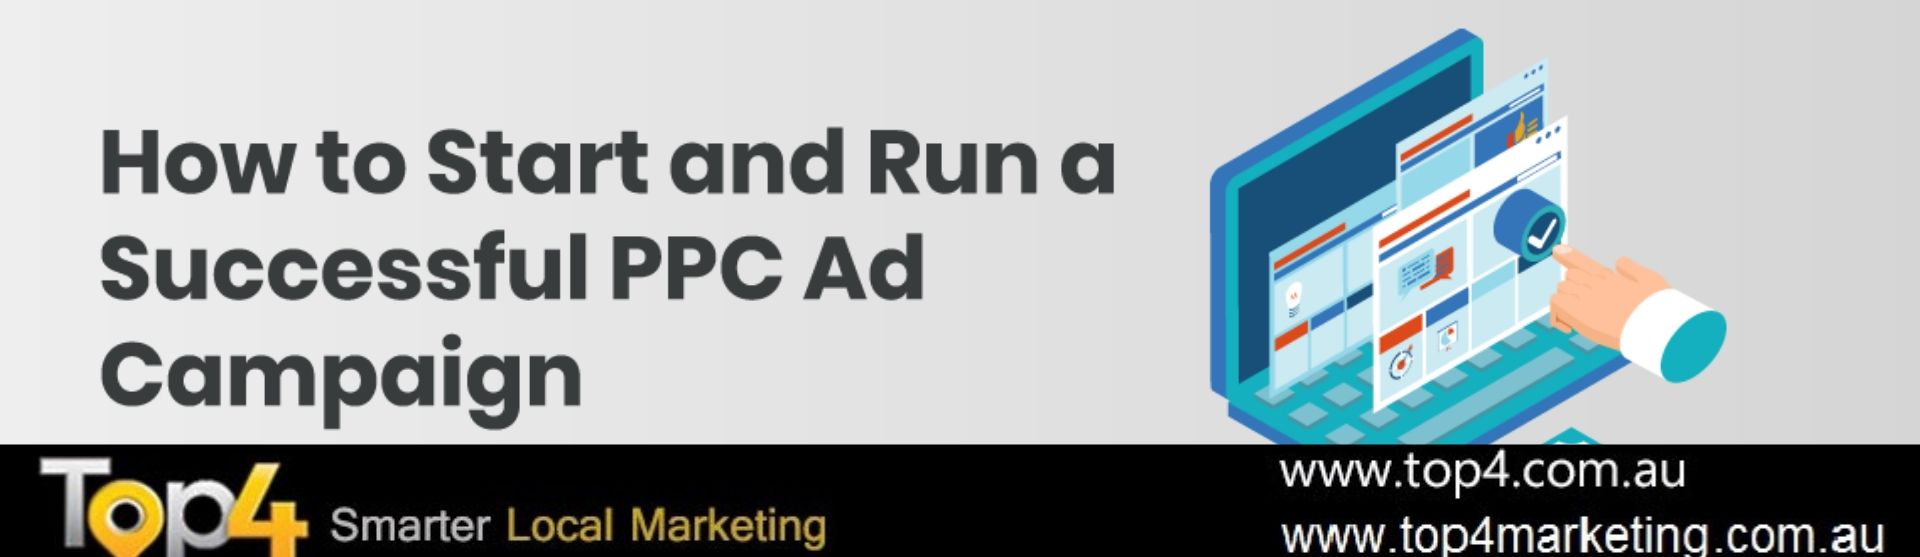 ppc ad campaign